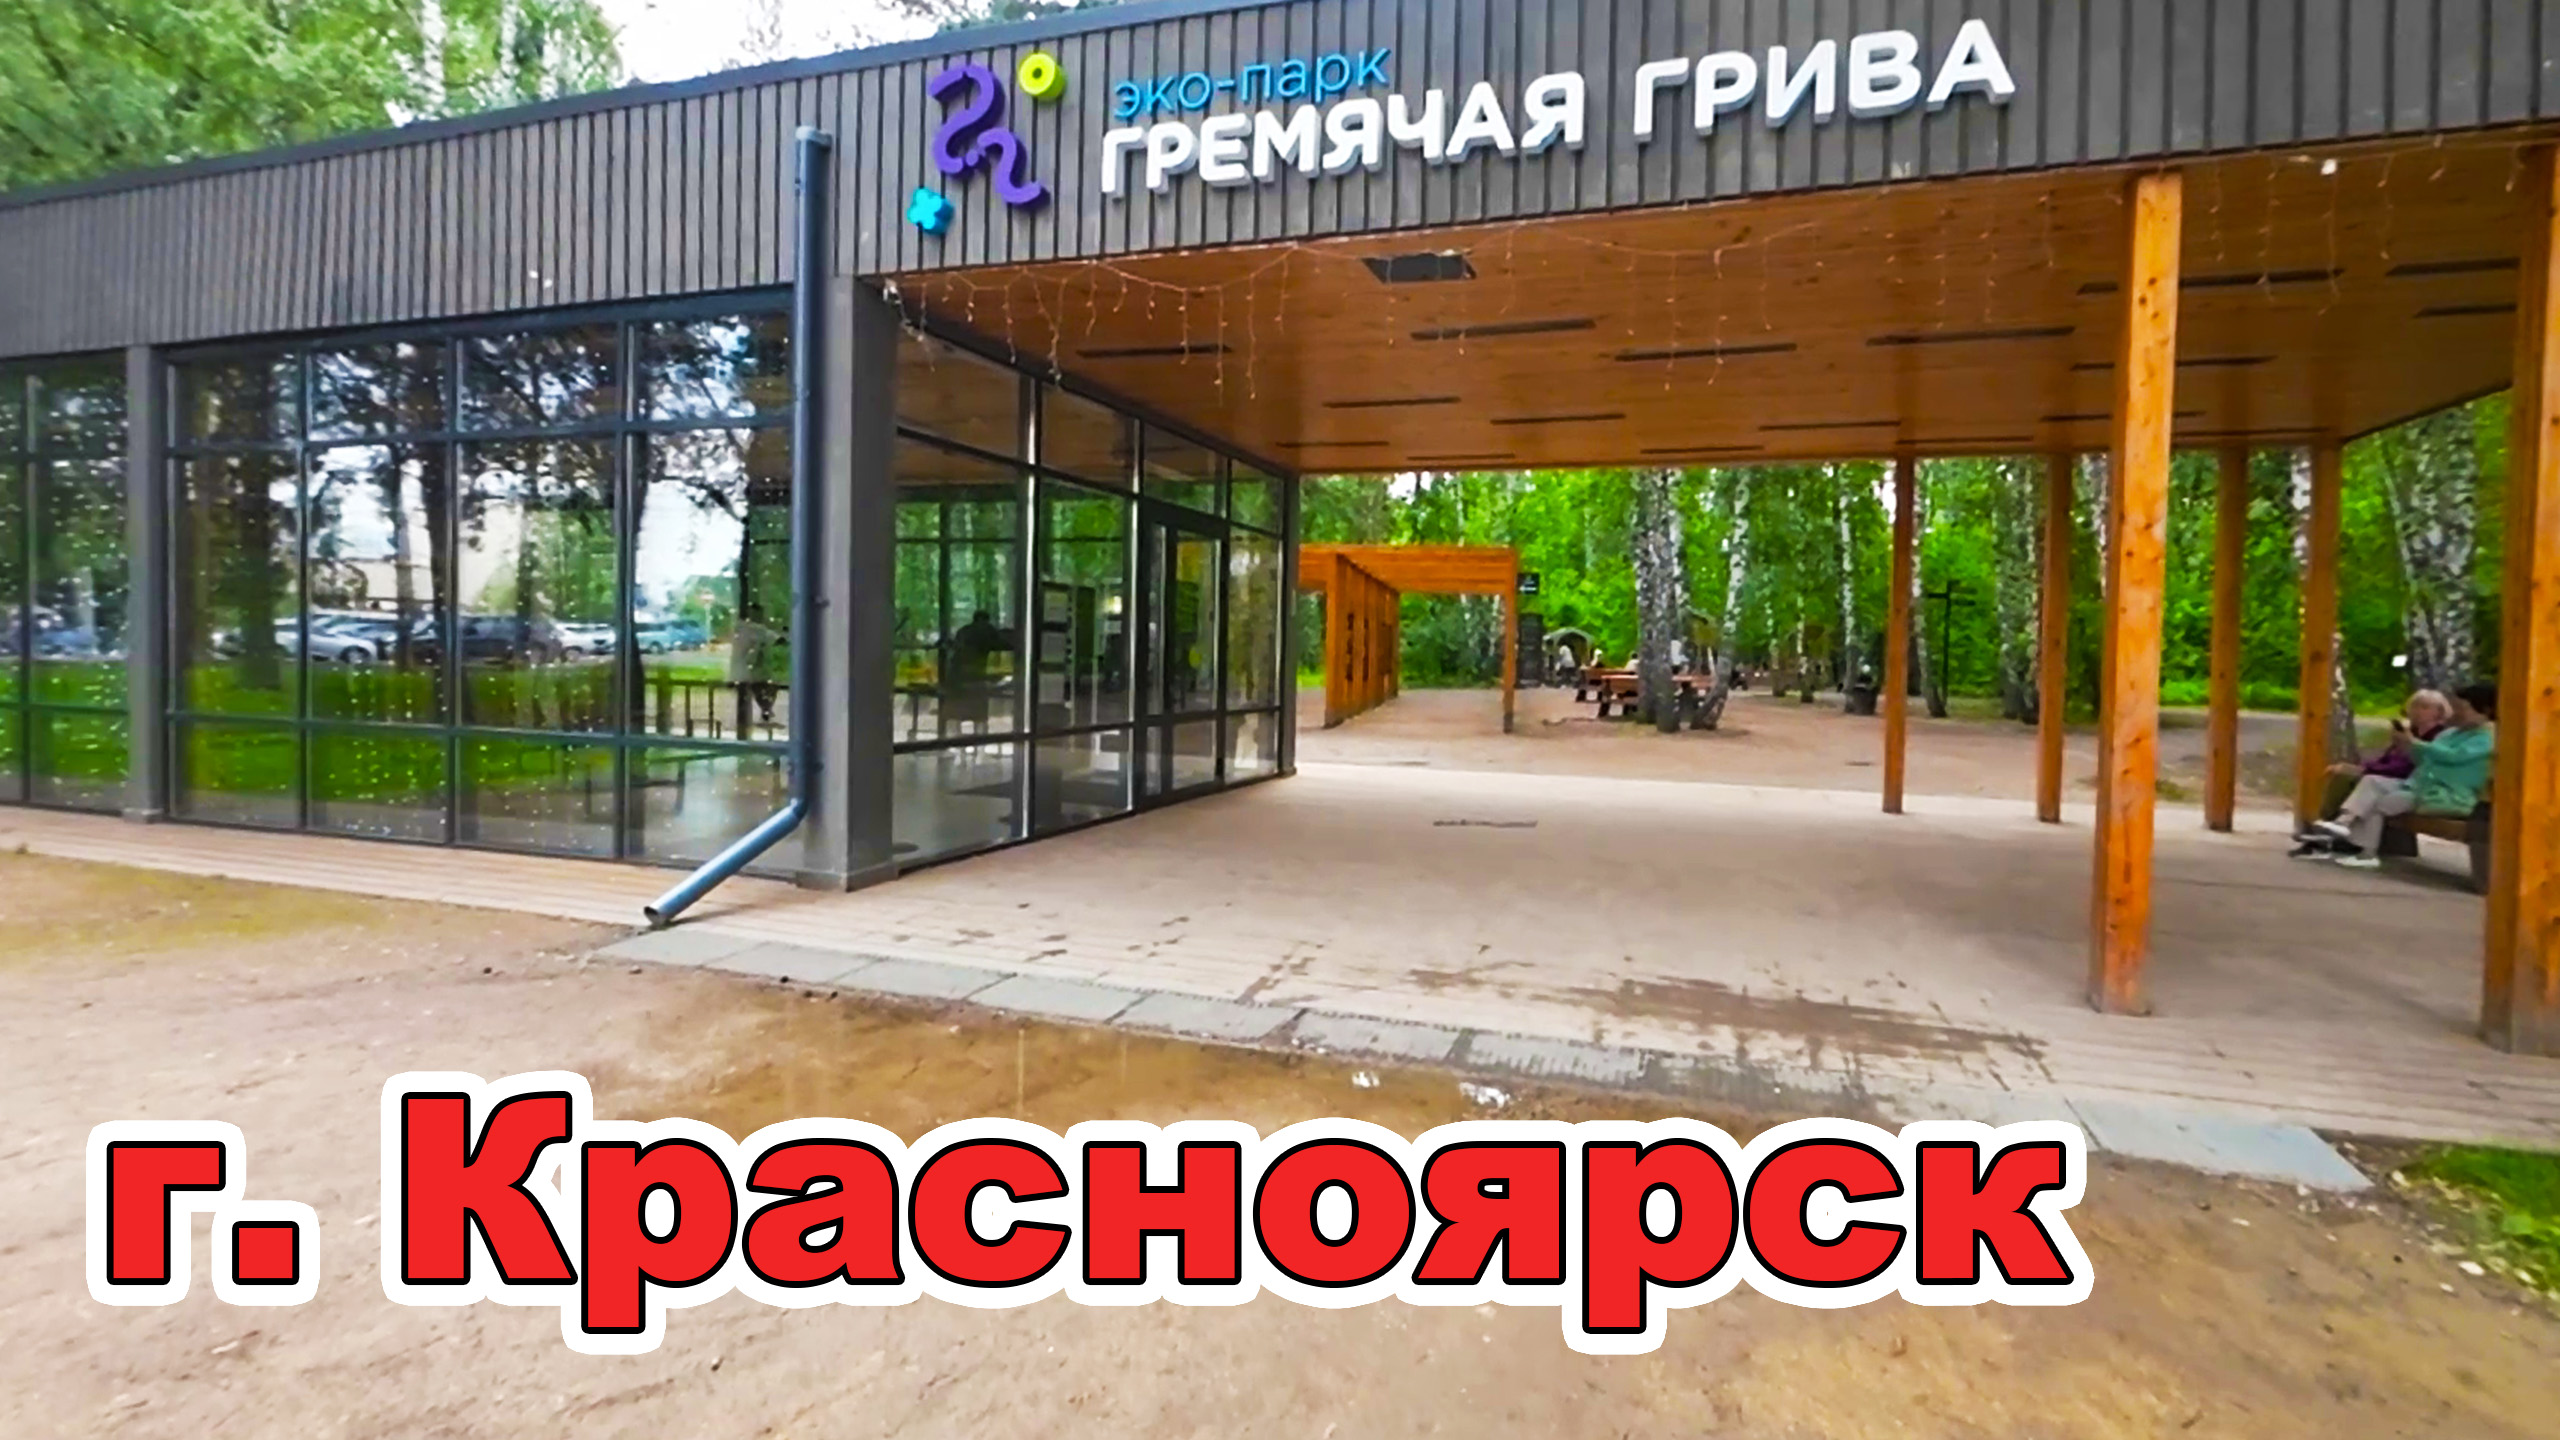 Эко-парк «Гремячая грива» г. Красноярск. Бесплатный отдых